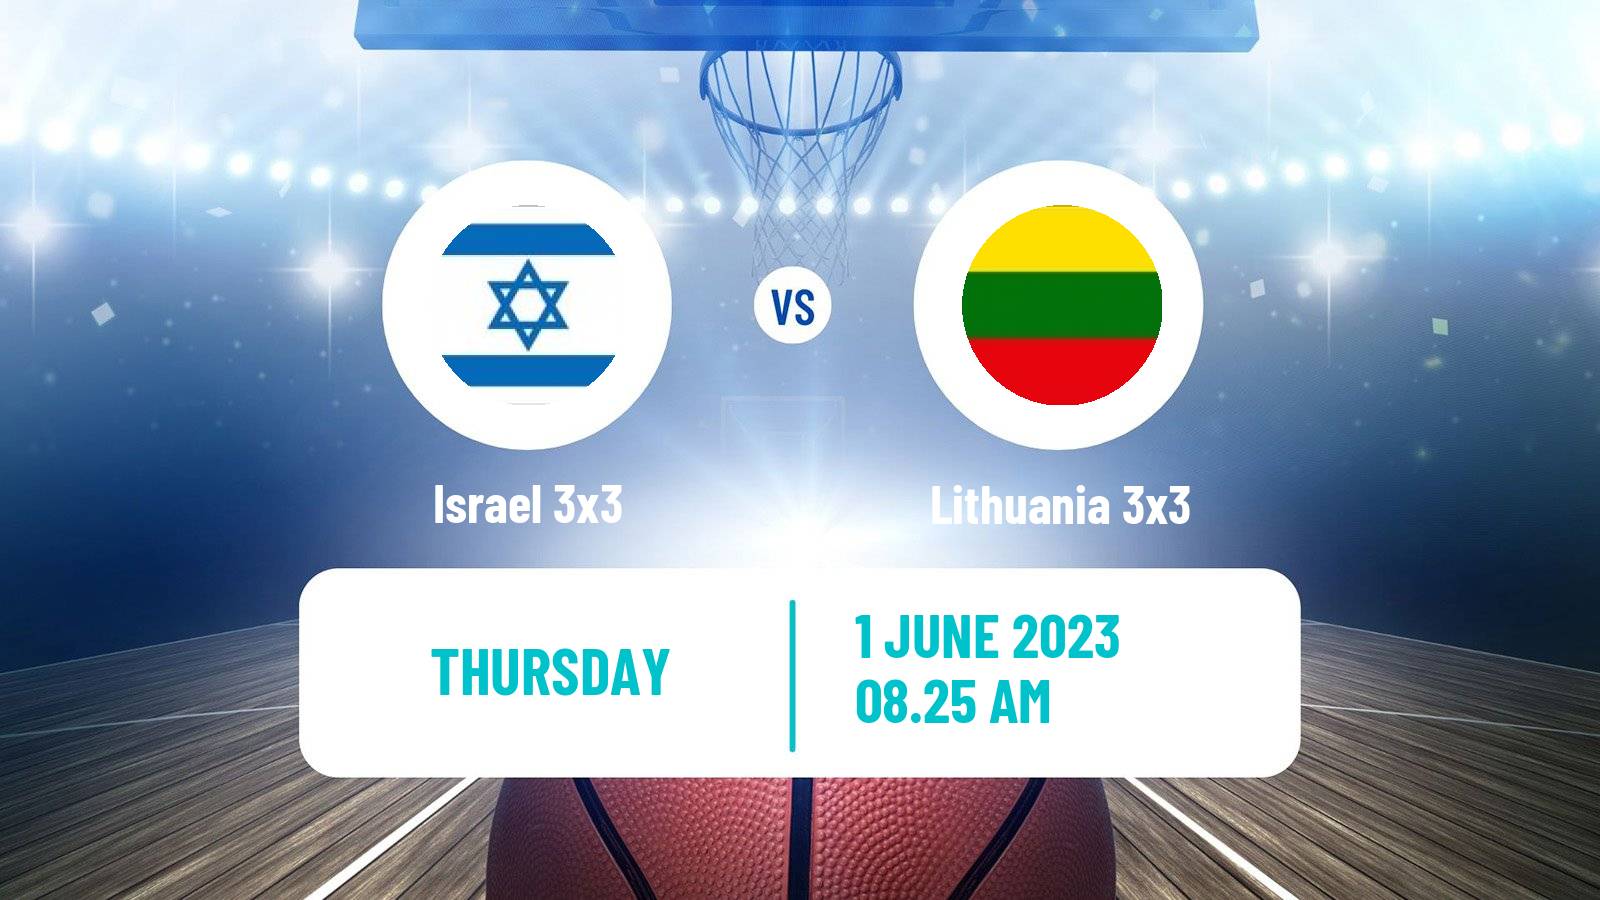 Basketball World Cup Basketball 3x3 Israel 3x3 - Lithuania 3x3